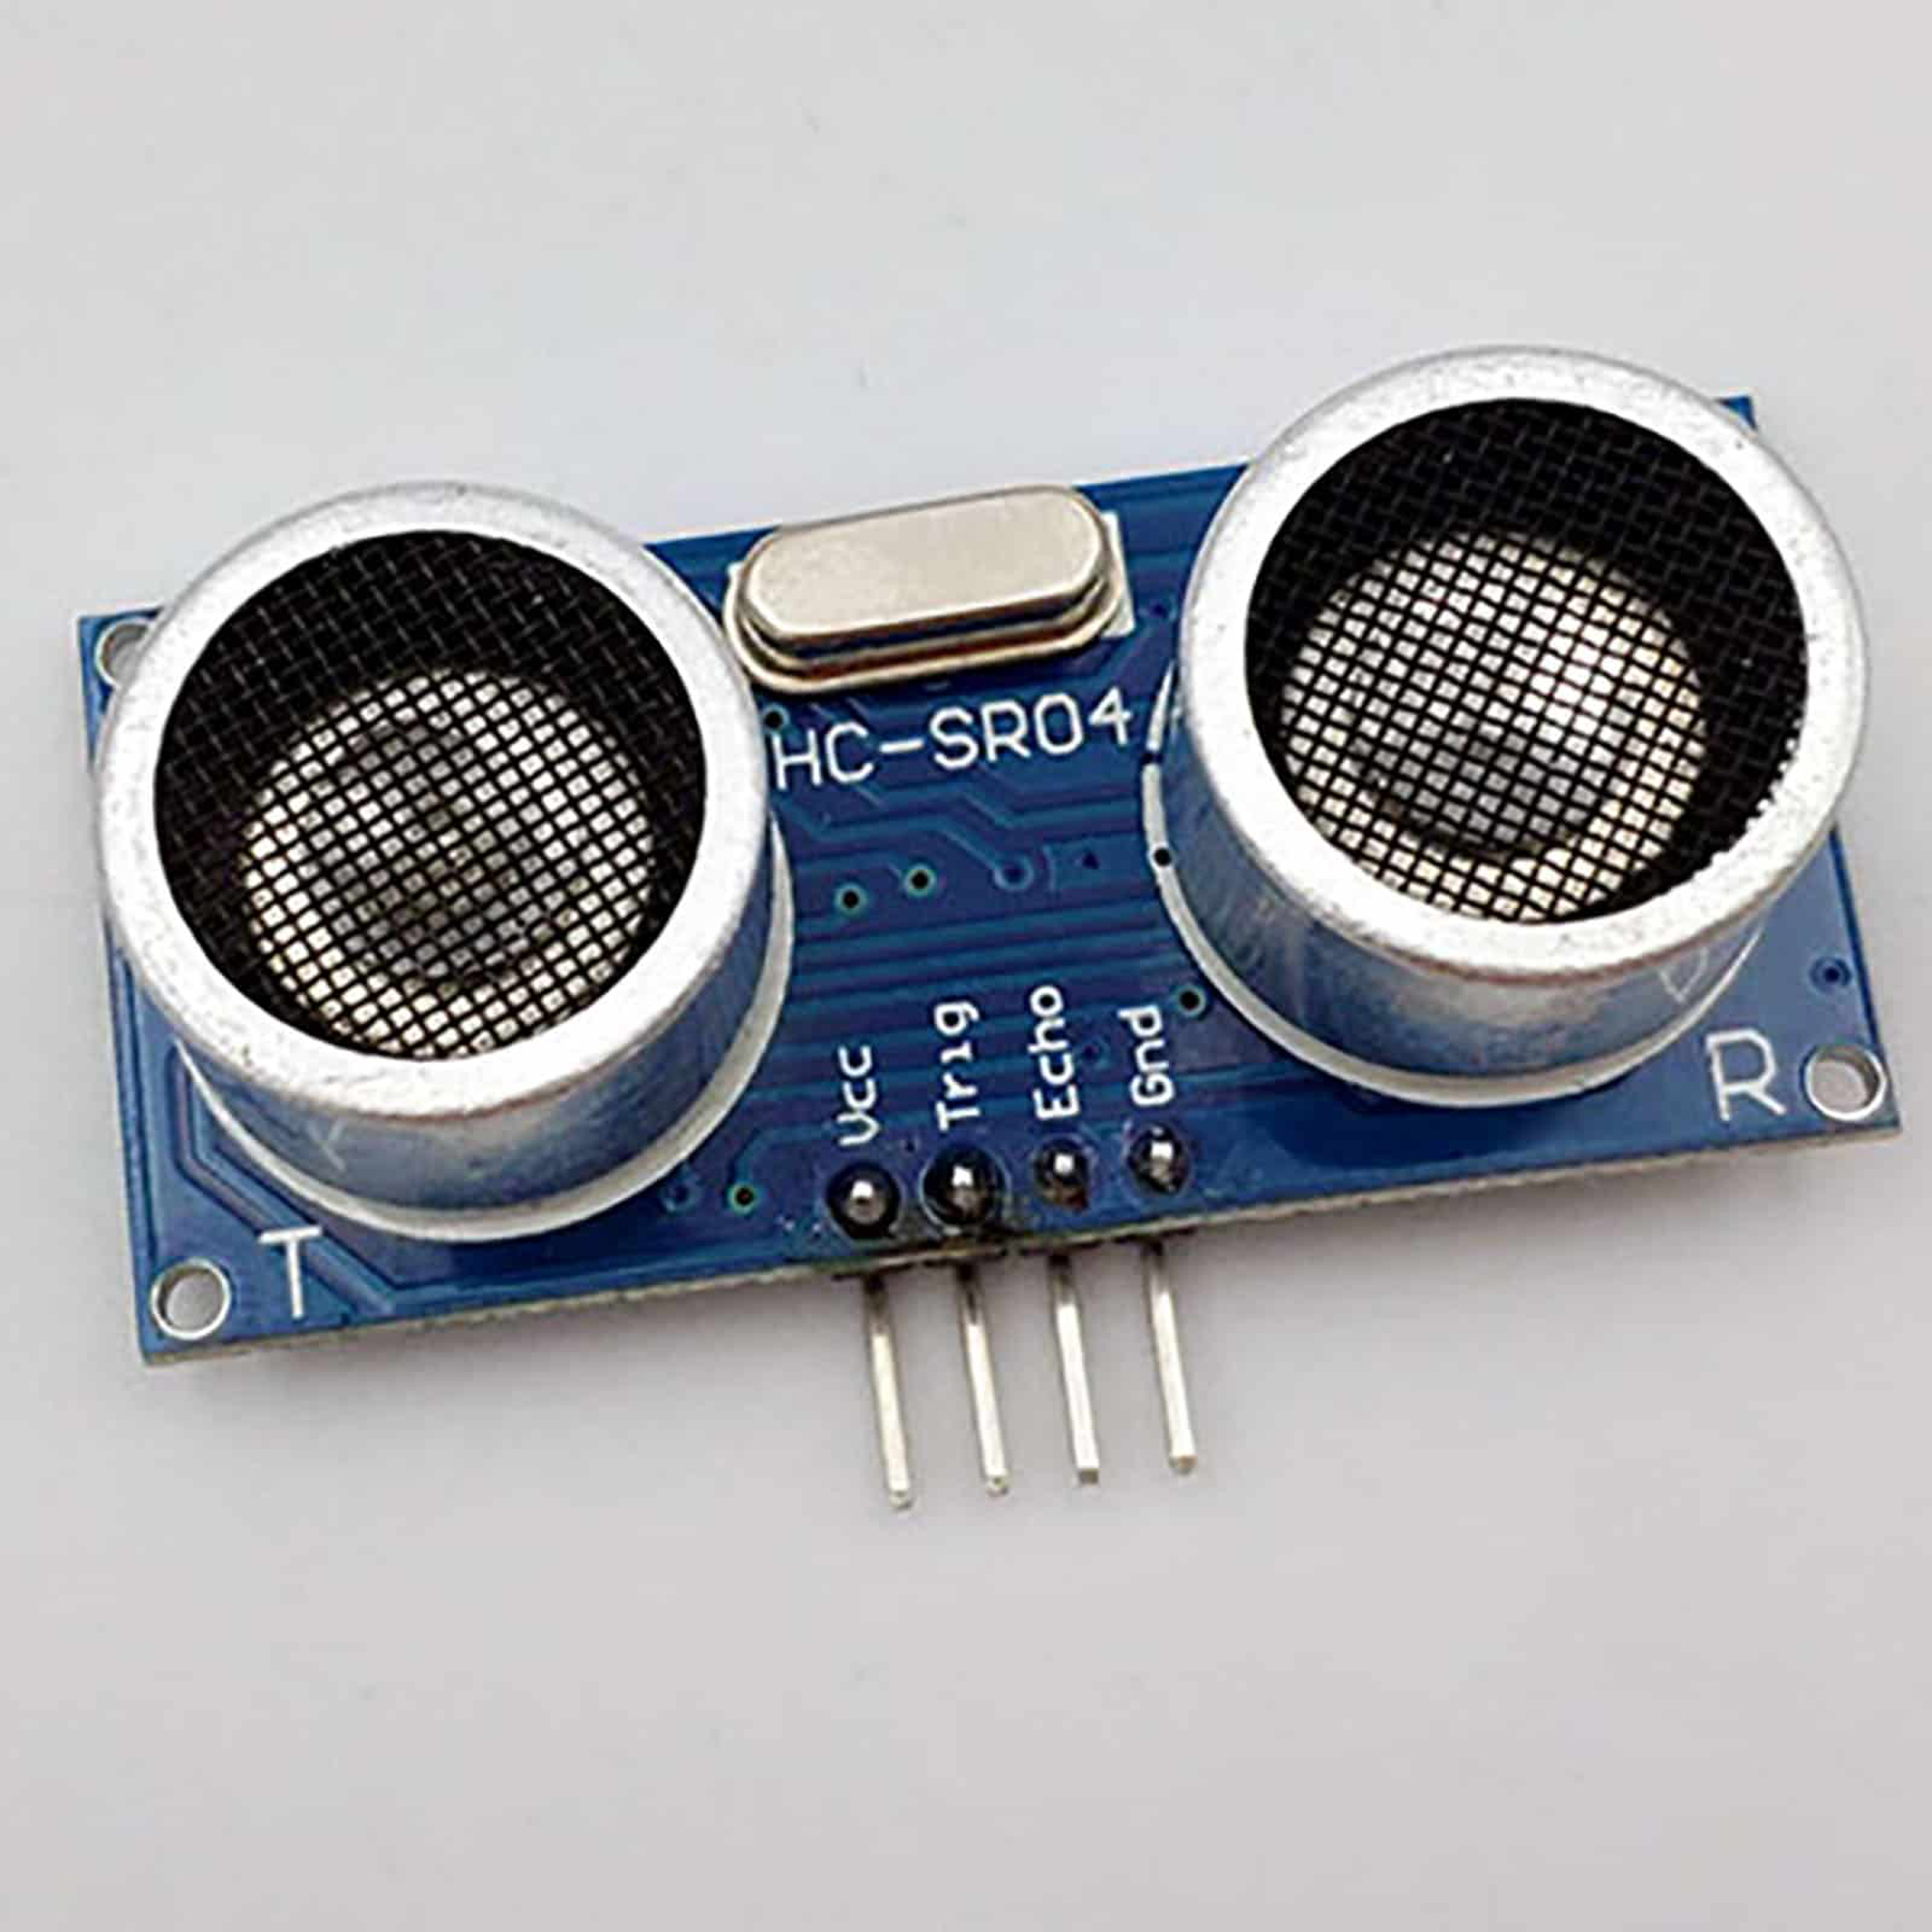 Arduino là gì và tại sao nó được sử dụng cùng với cảm biến siêu âm?
